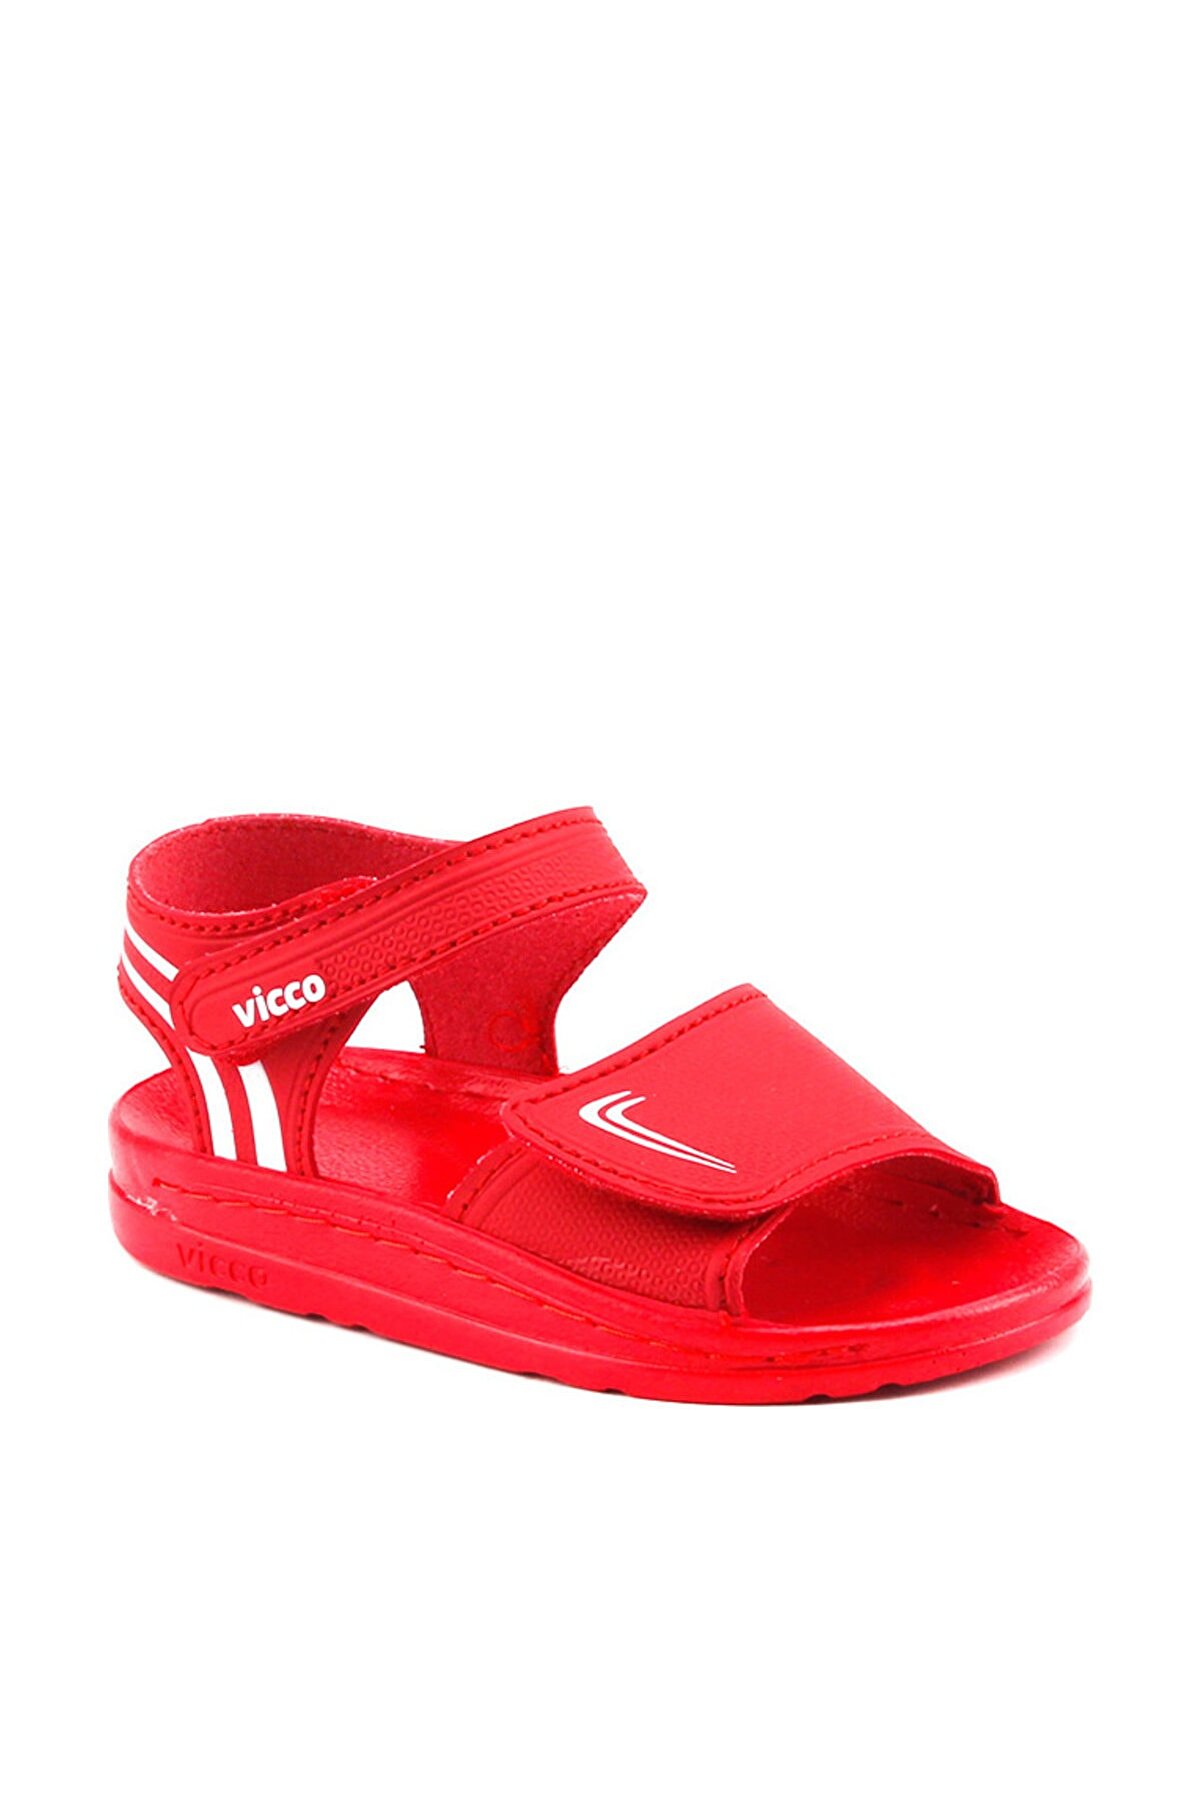 Vicco Kırmızı Erkek Sandalet 18A02304